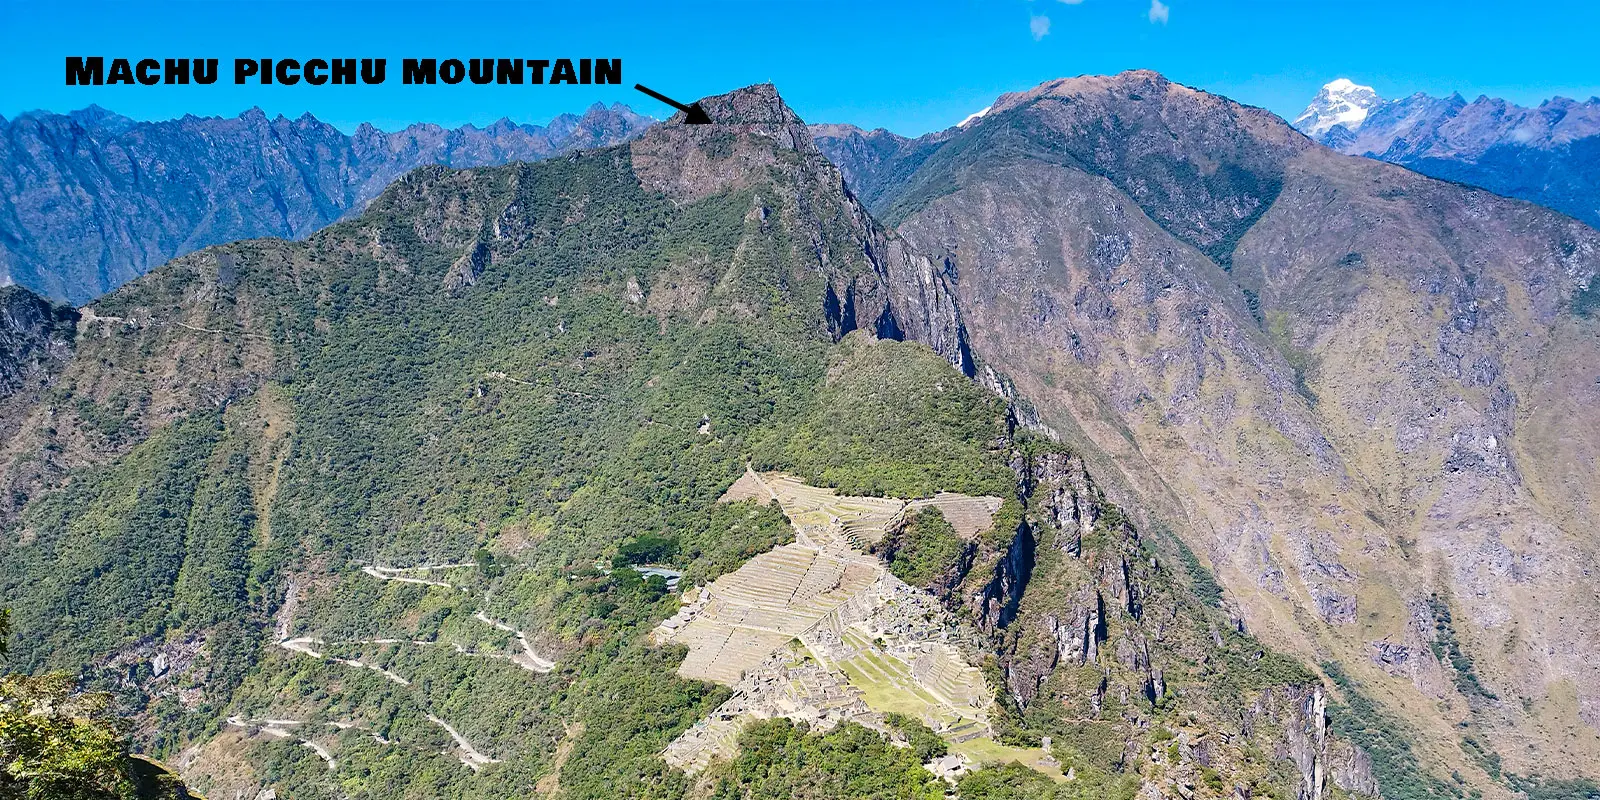 Macchu Picchu Mountain from Huayna Picchu